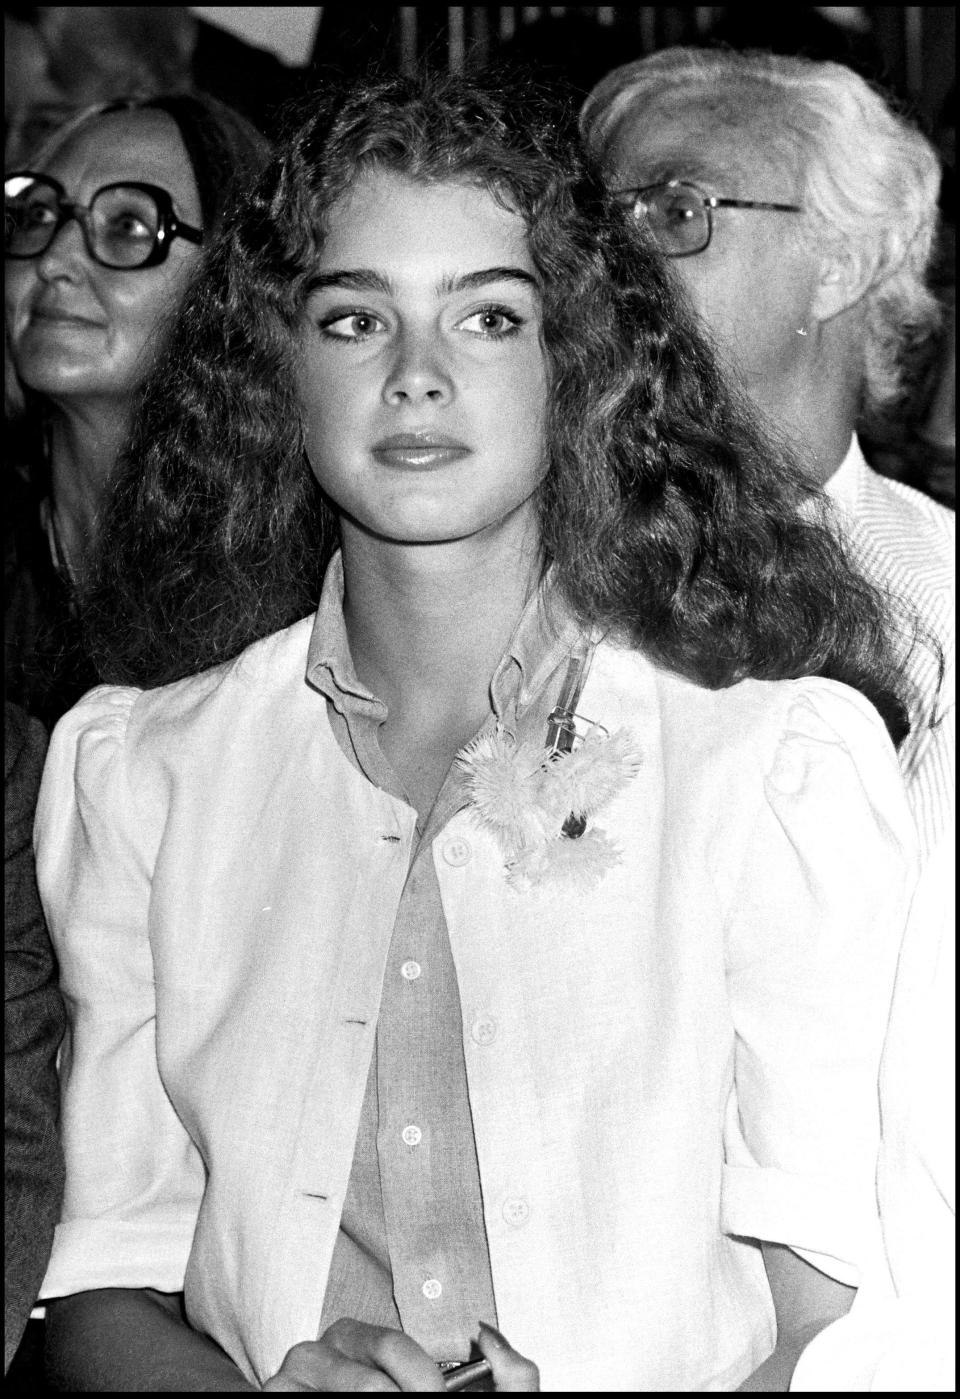 Brooke Shields in 1981 when she was 16.